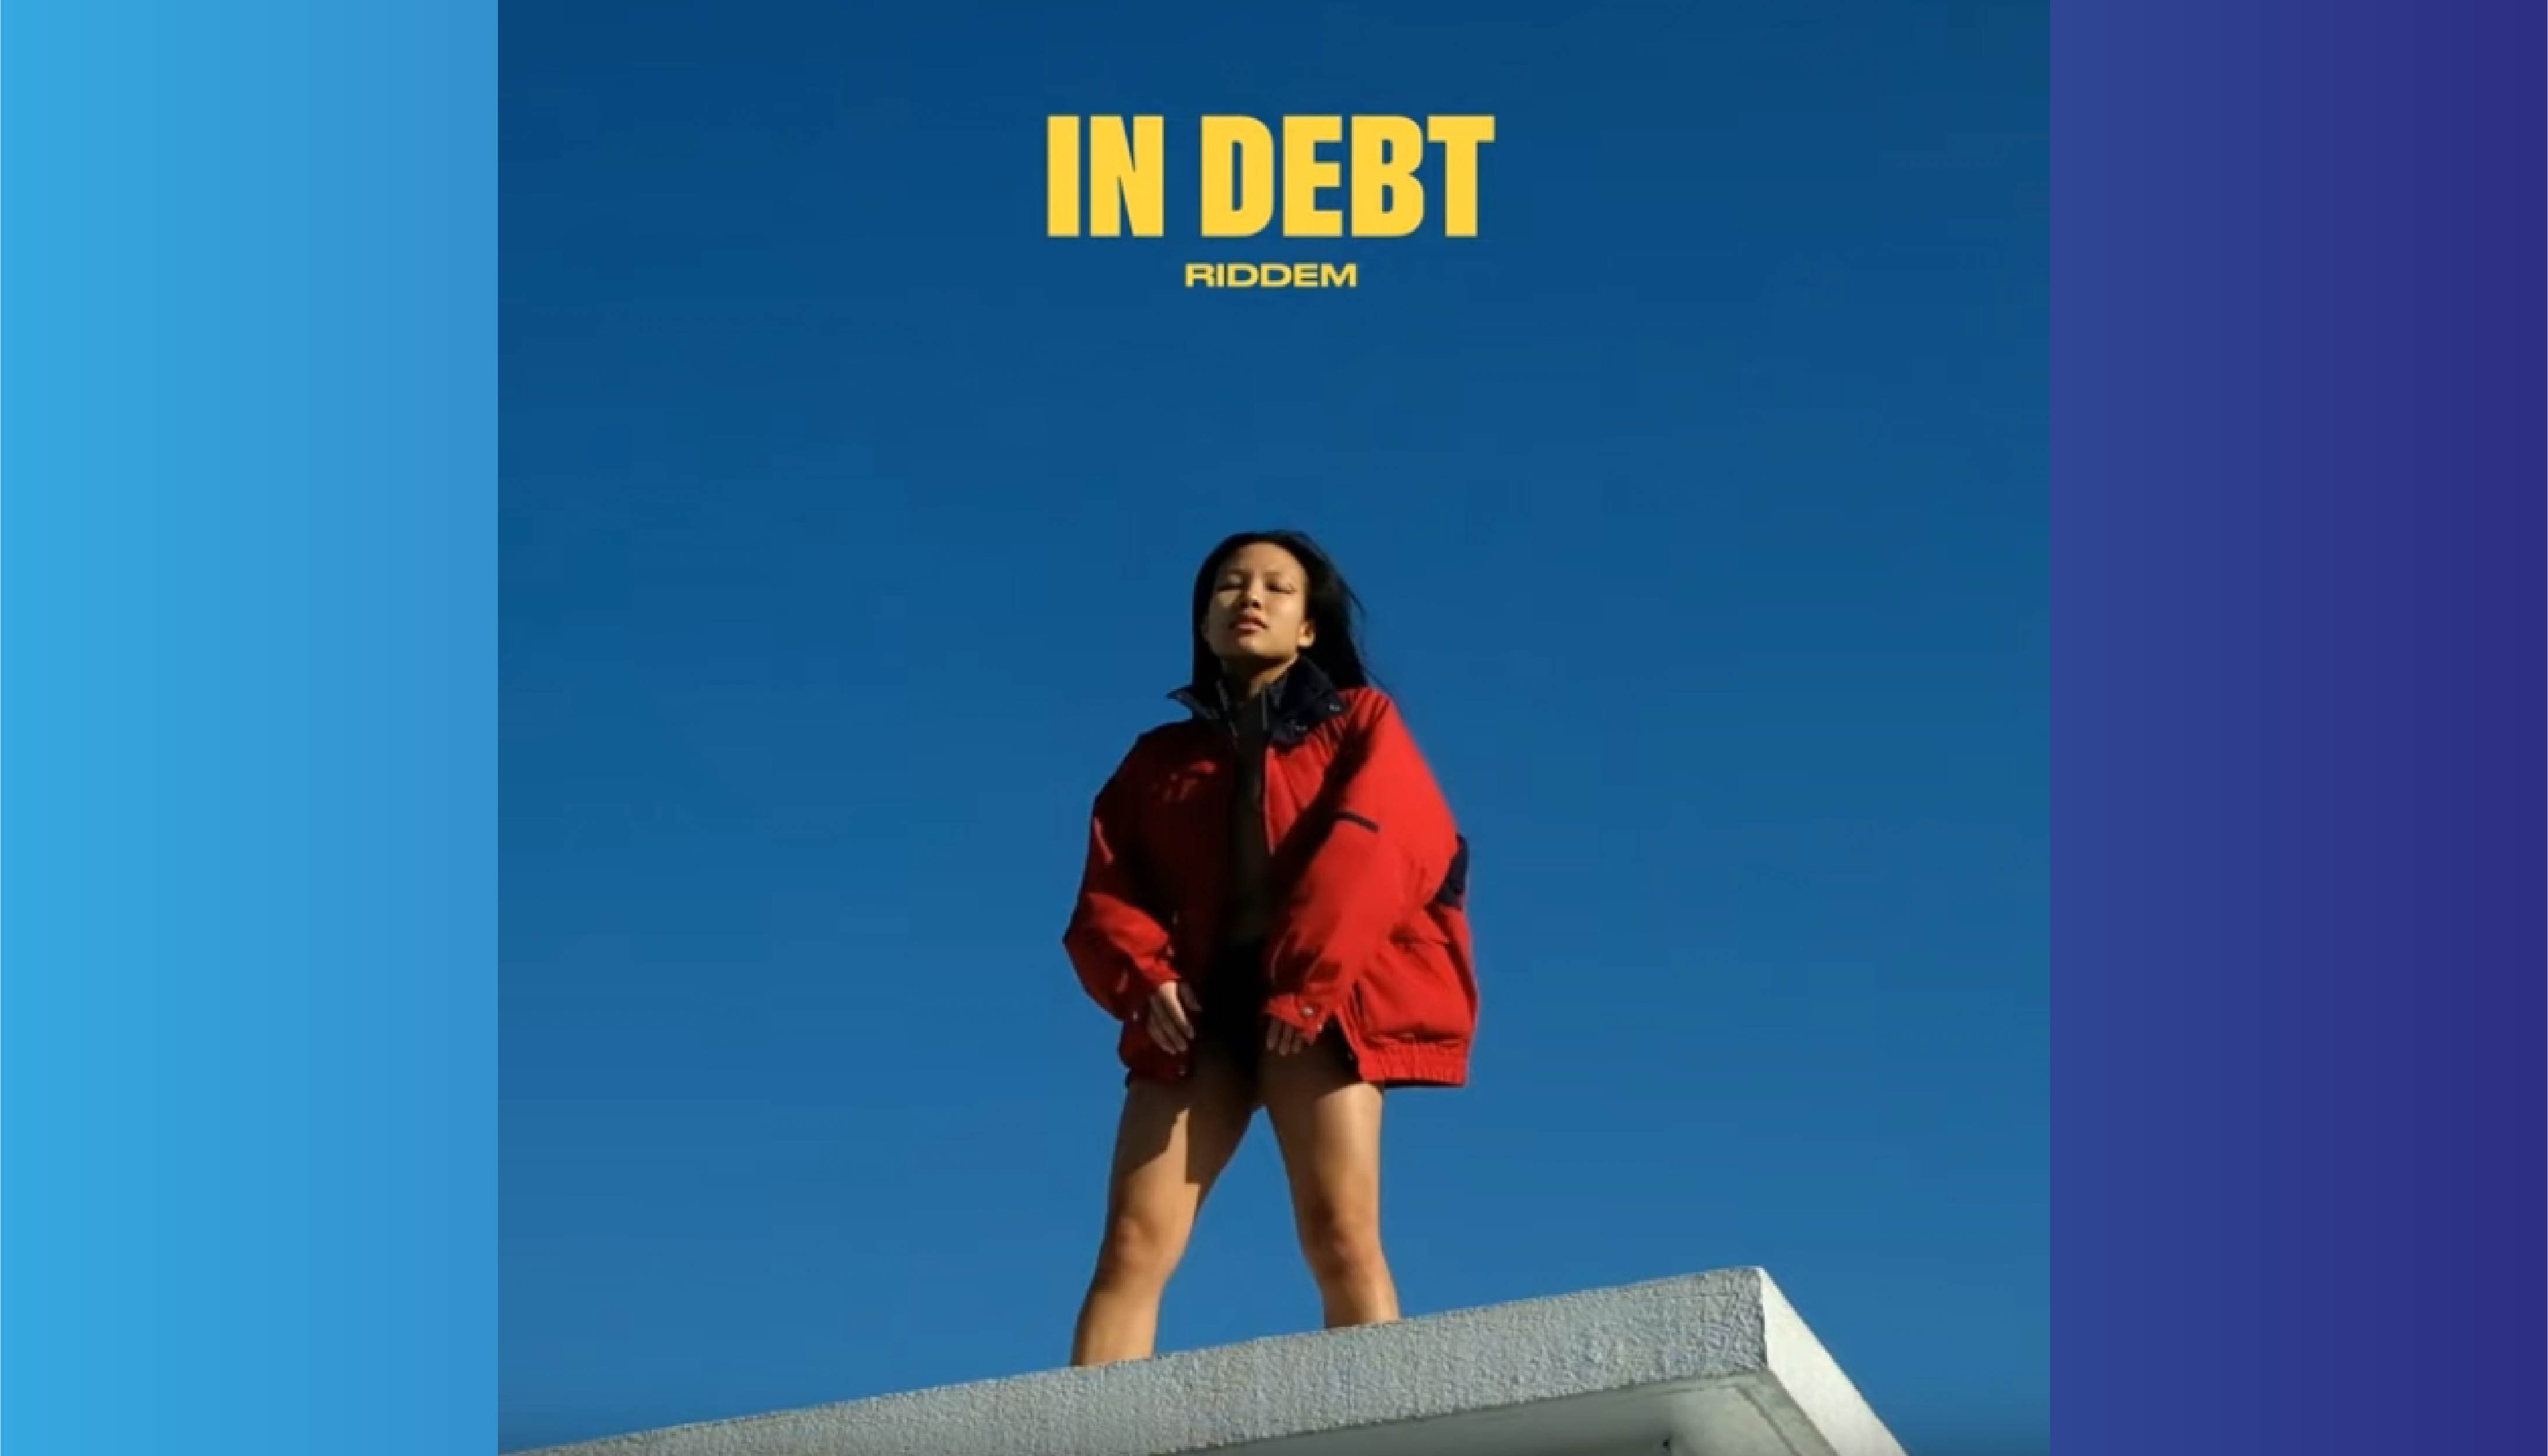 Riddem – In Debt (single)